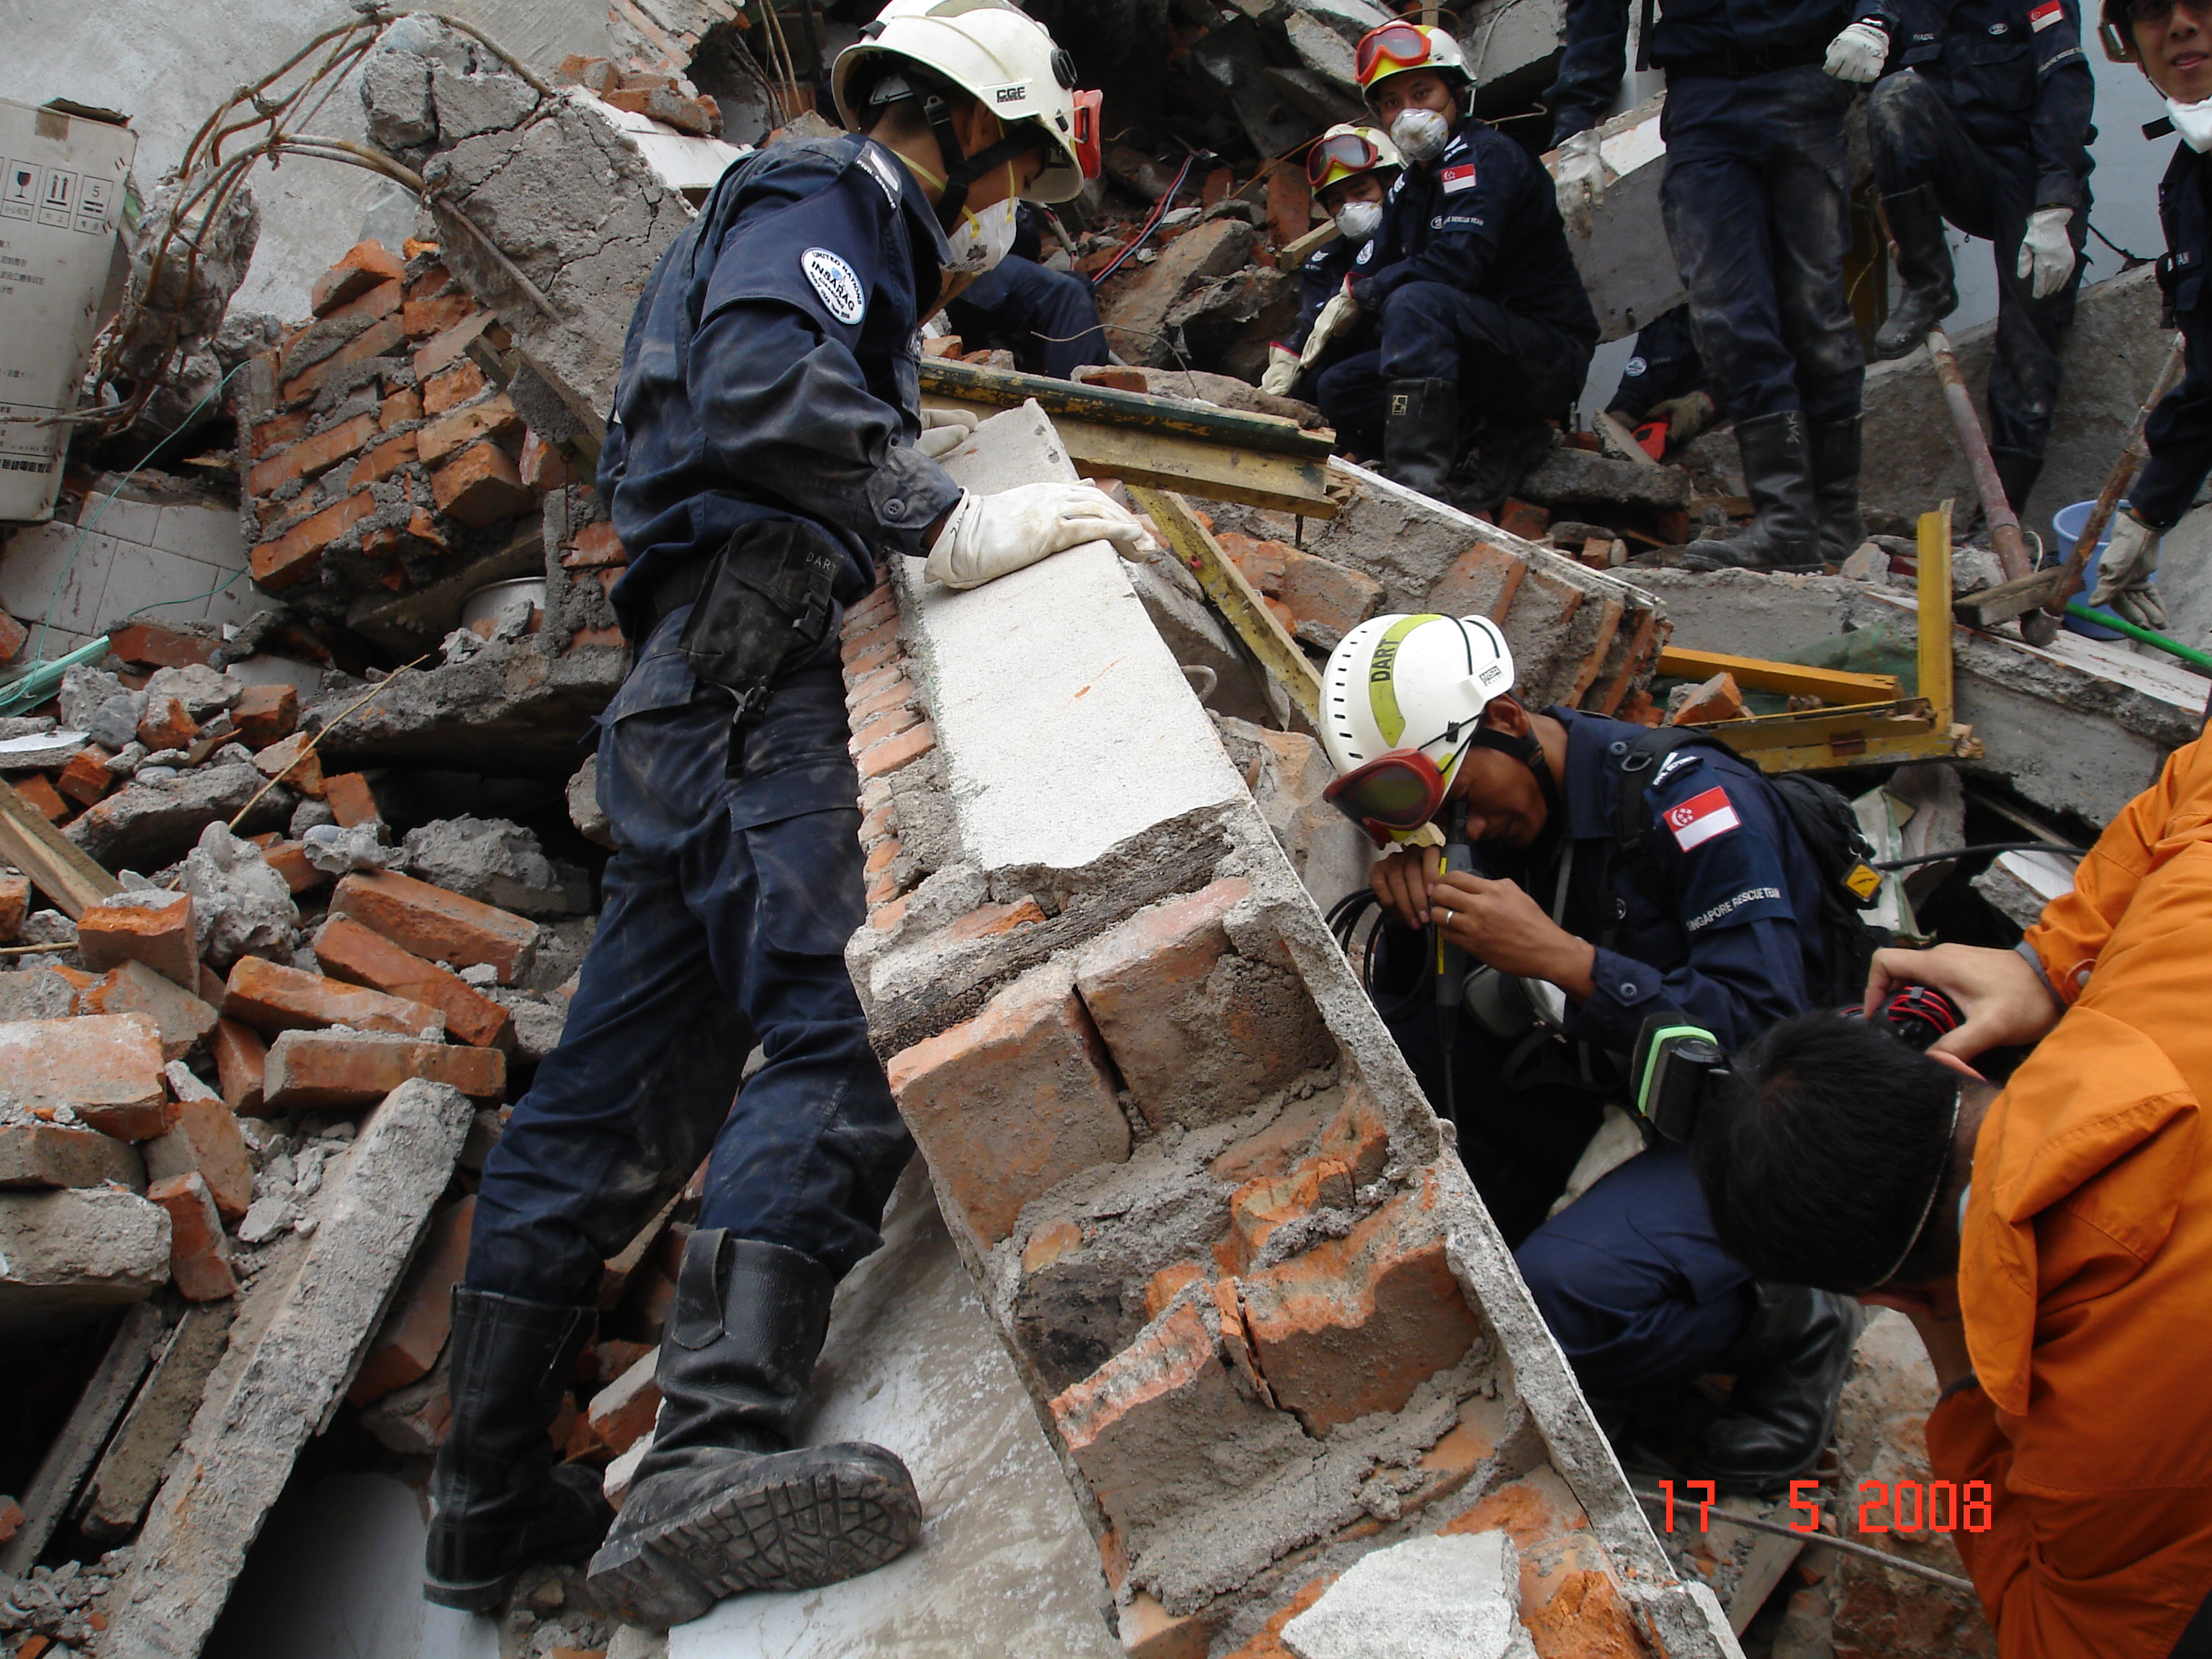 OLH 2008 Earthquake @ Sichuan, China 007